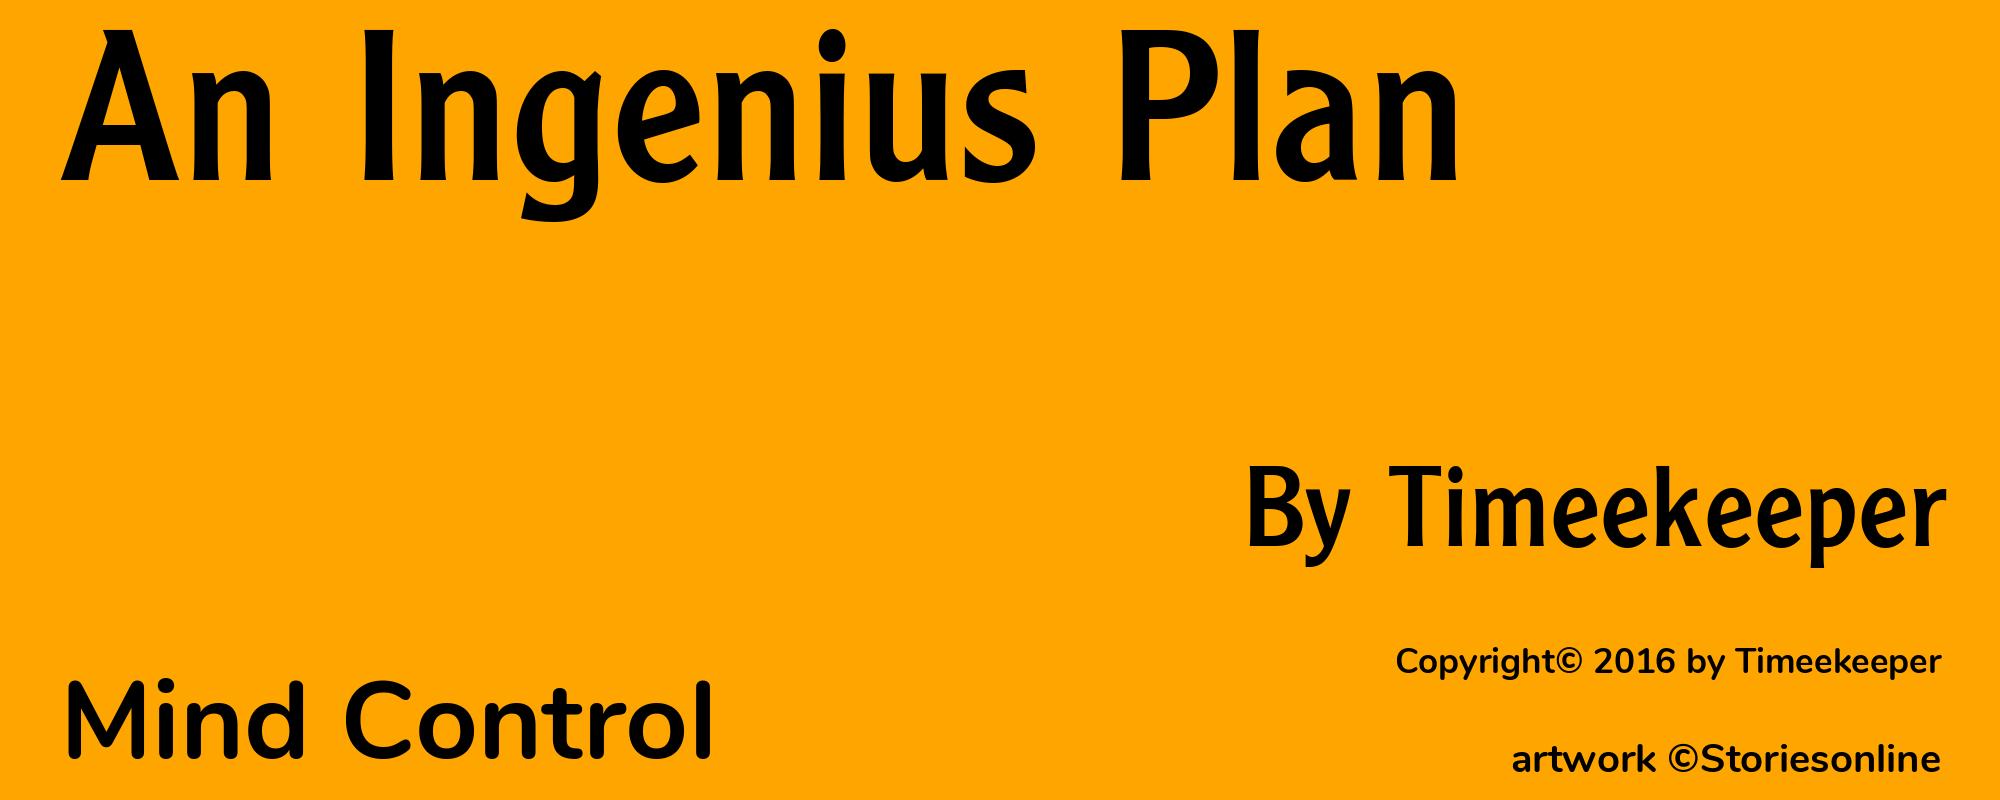 An Ingenius Plan - Cover